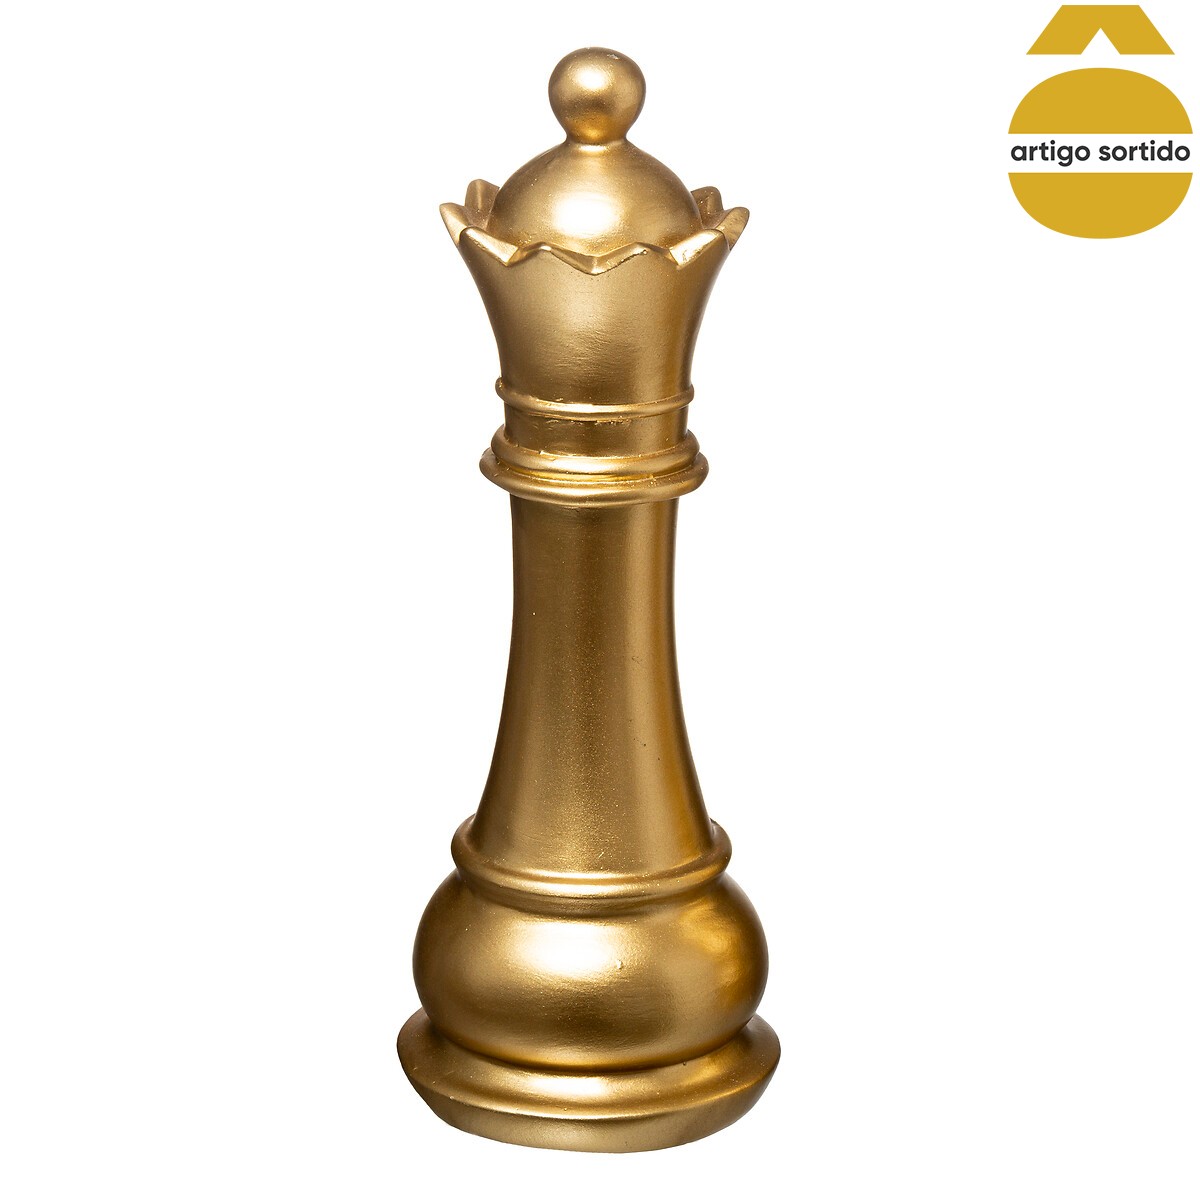 Qual é o valor de cada peça do xadrez?